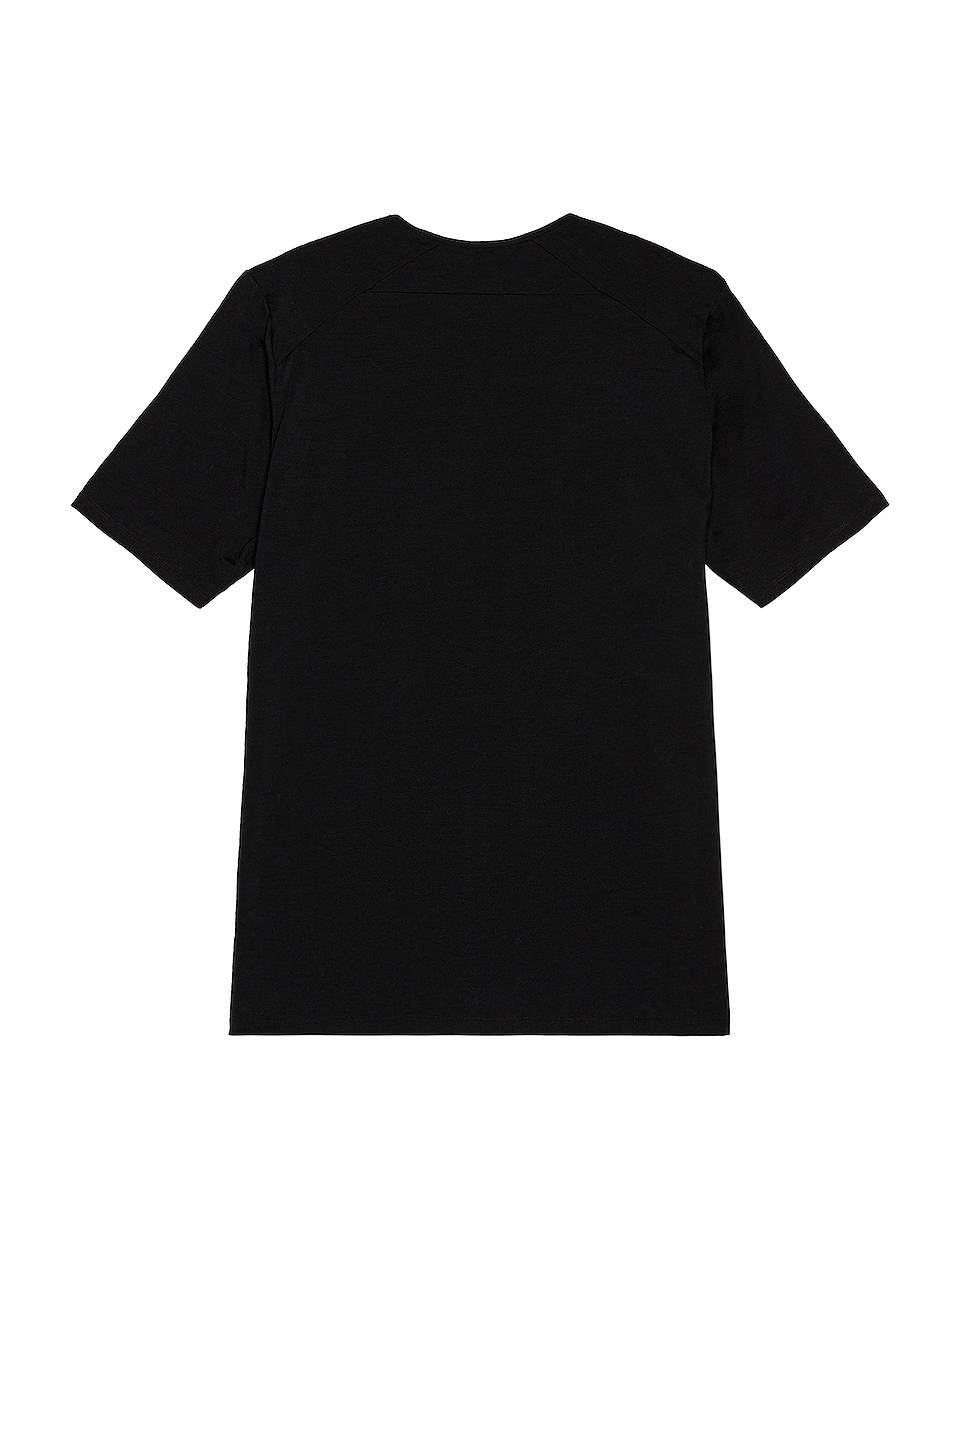 Veilance Frame T-Shirt in Black | REVOLVE